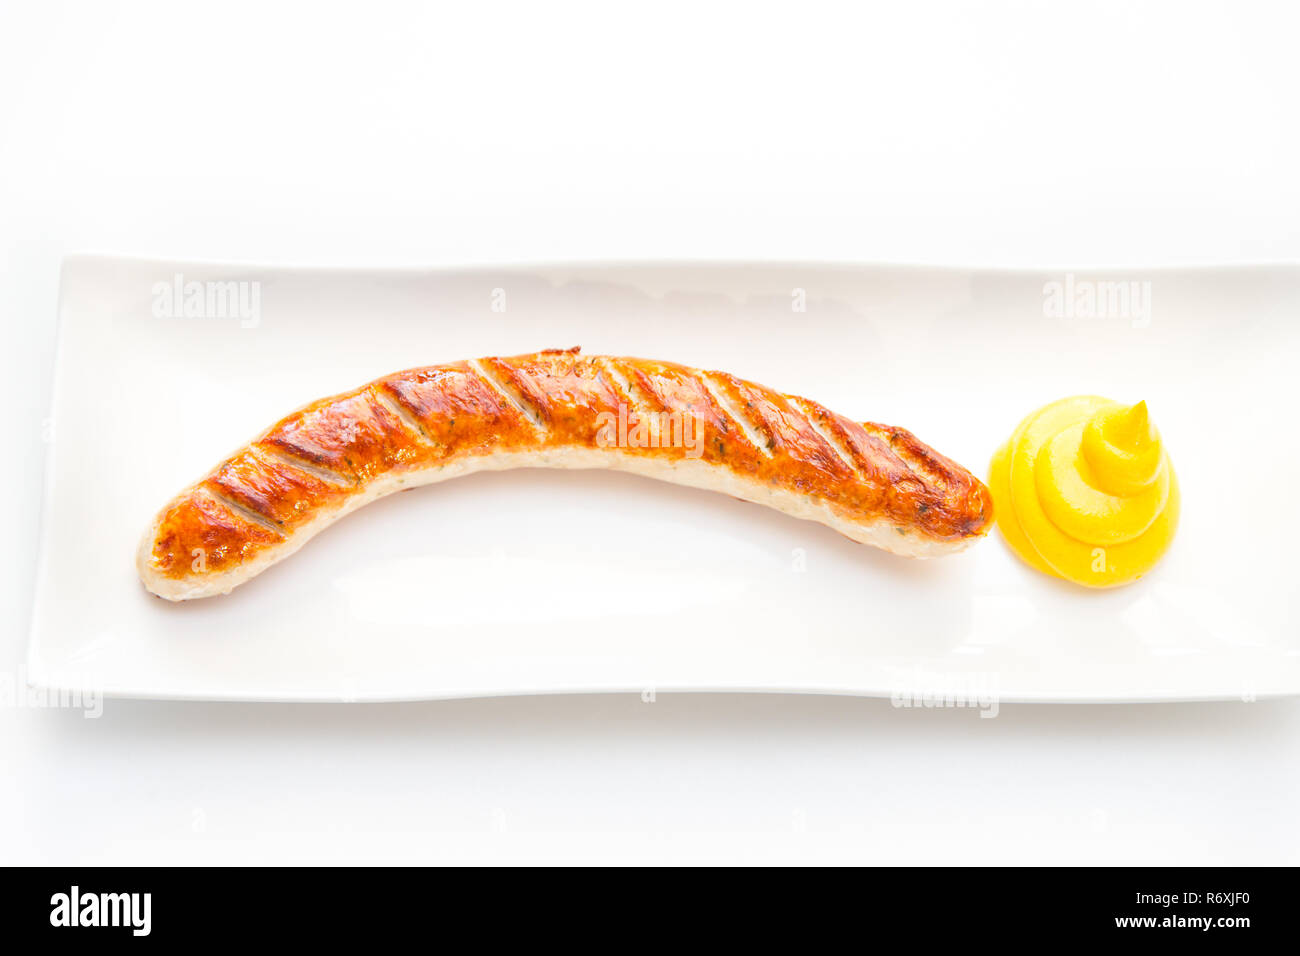 Il bratwurst con senape e pane Foto Stock